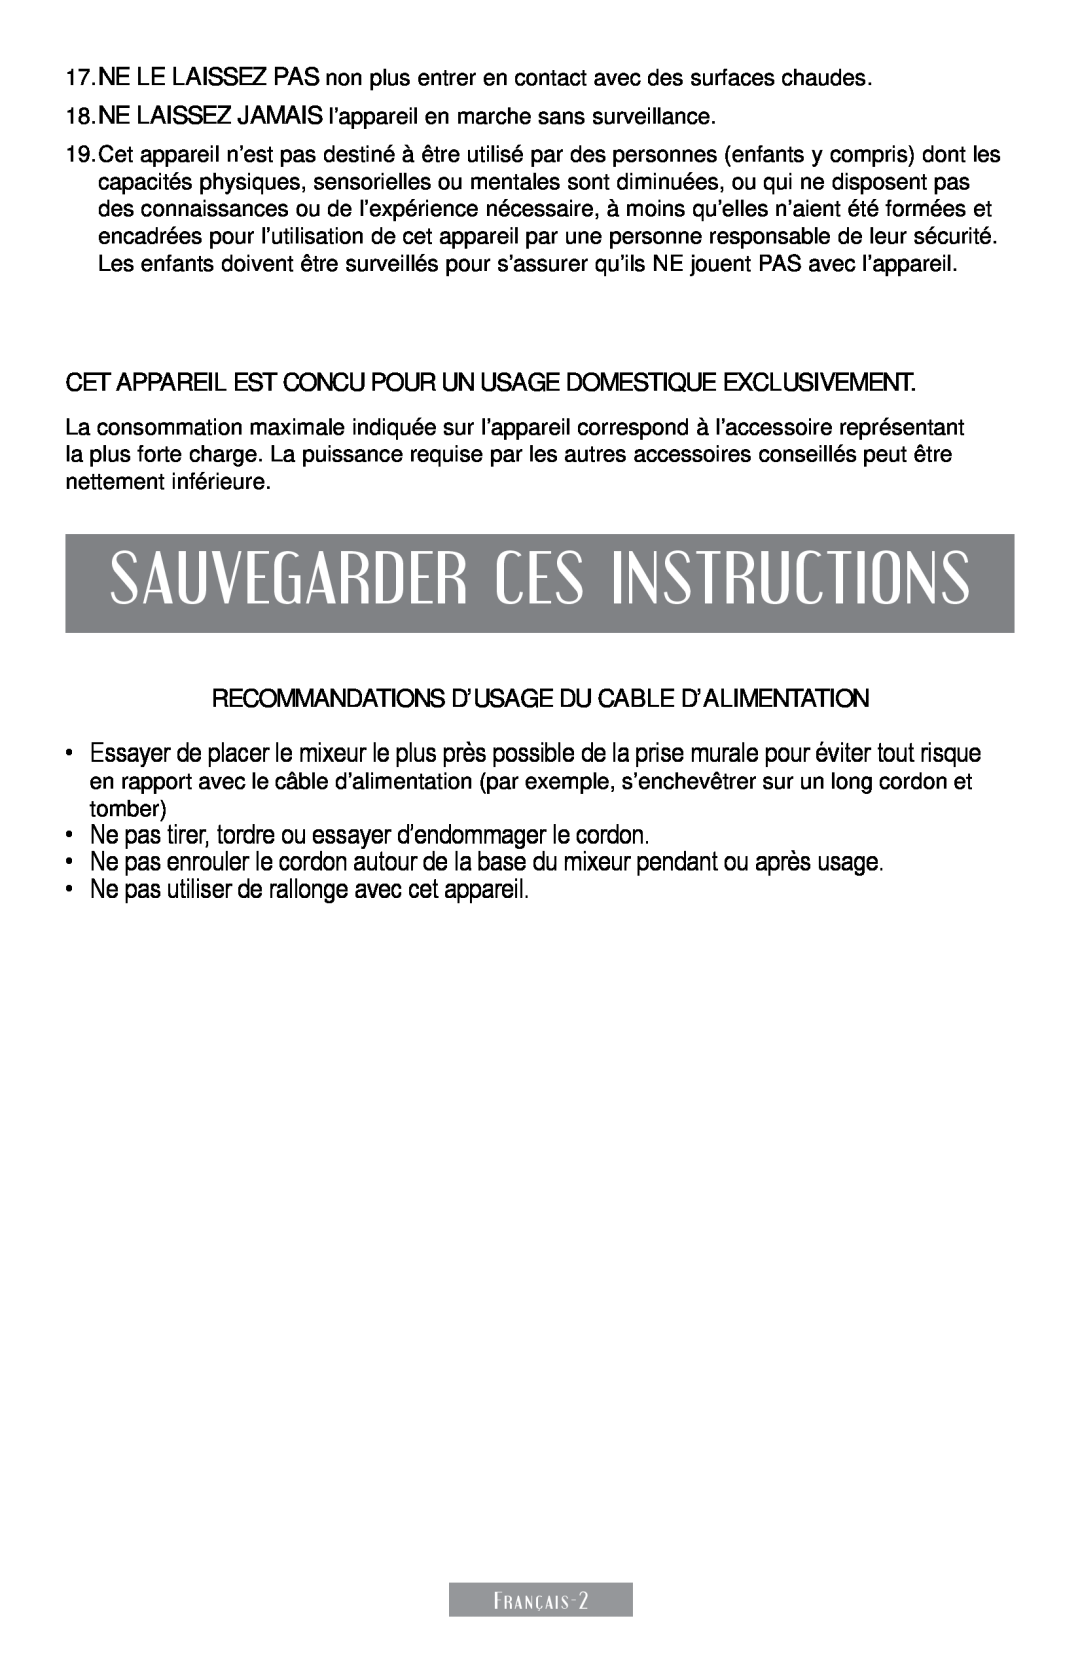 Sunbeam 250-22 instruction manual Sauvegarder Ces Instructions, Recommandations D’Usage Du Cable D’Alimentation 